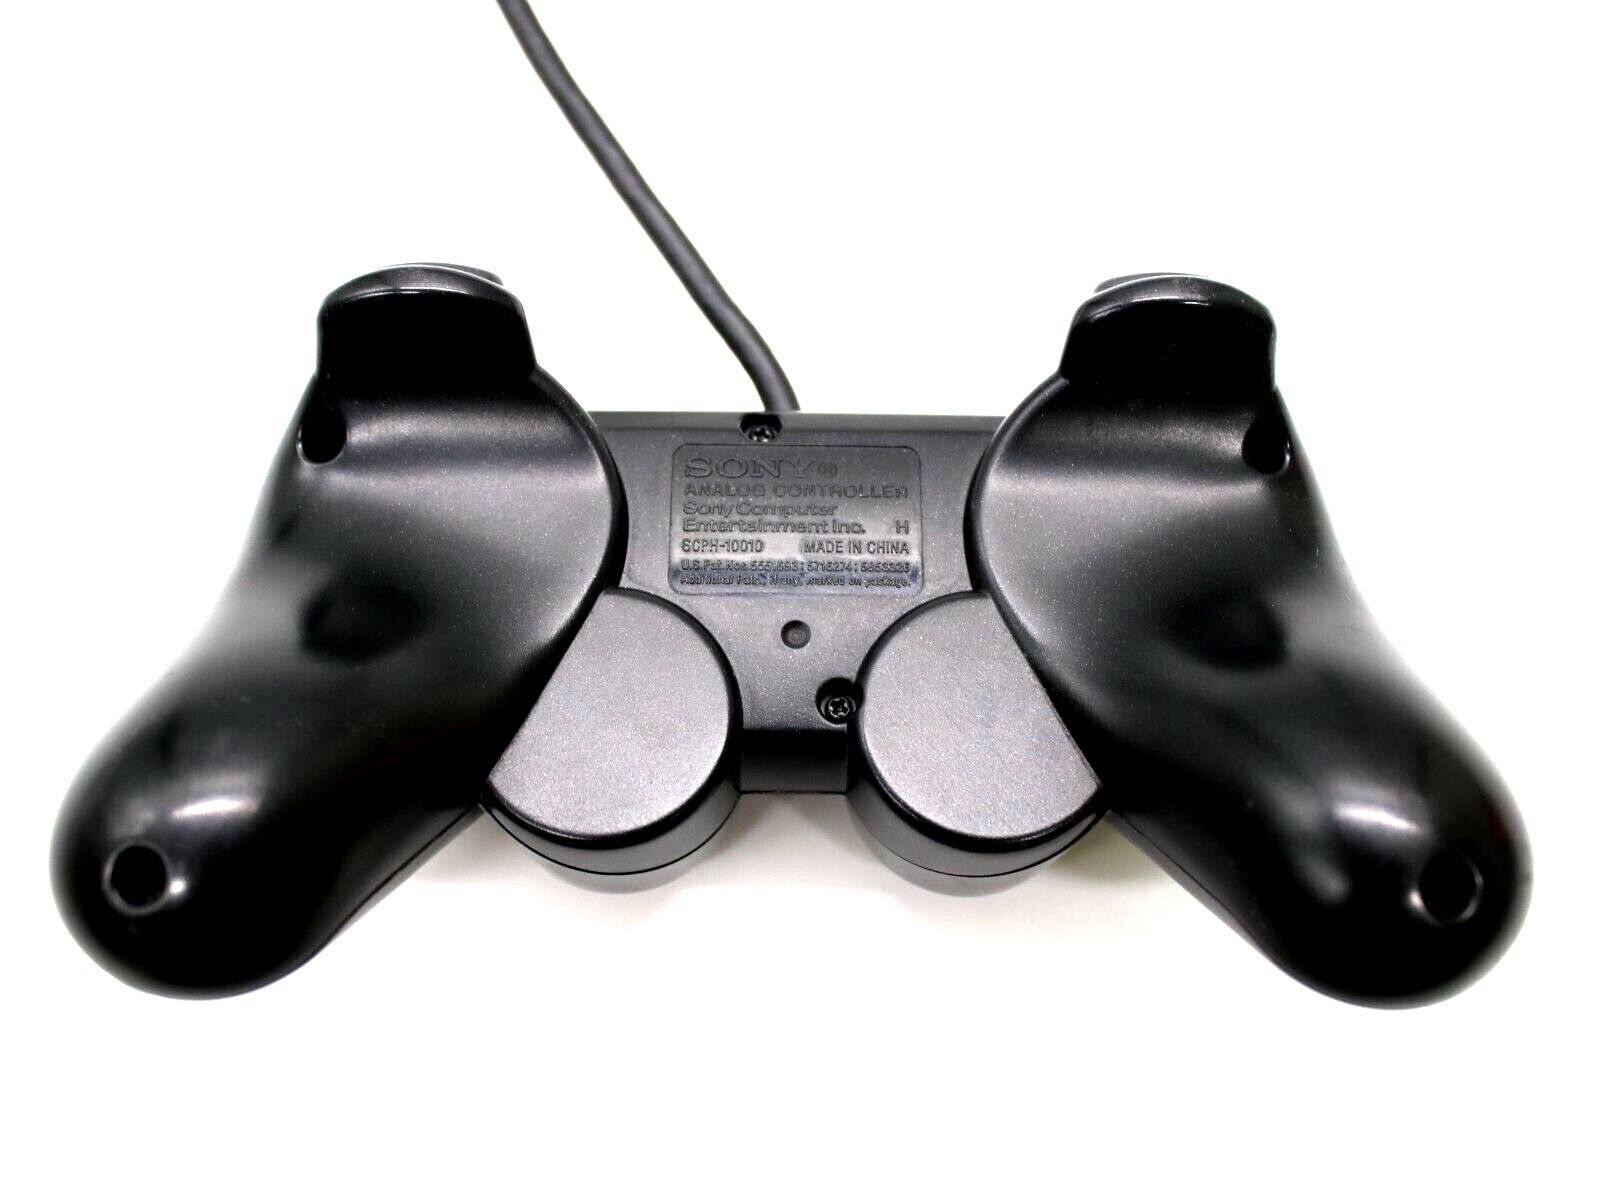 Sony Playstation 2 original Controller Schwarz gebraucht DualShock